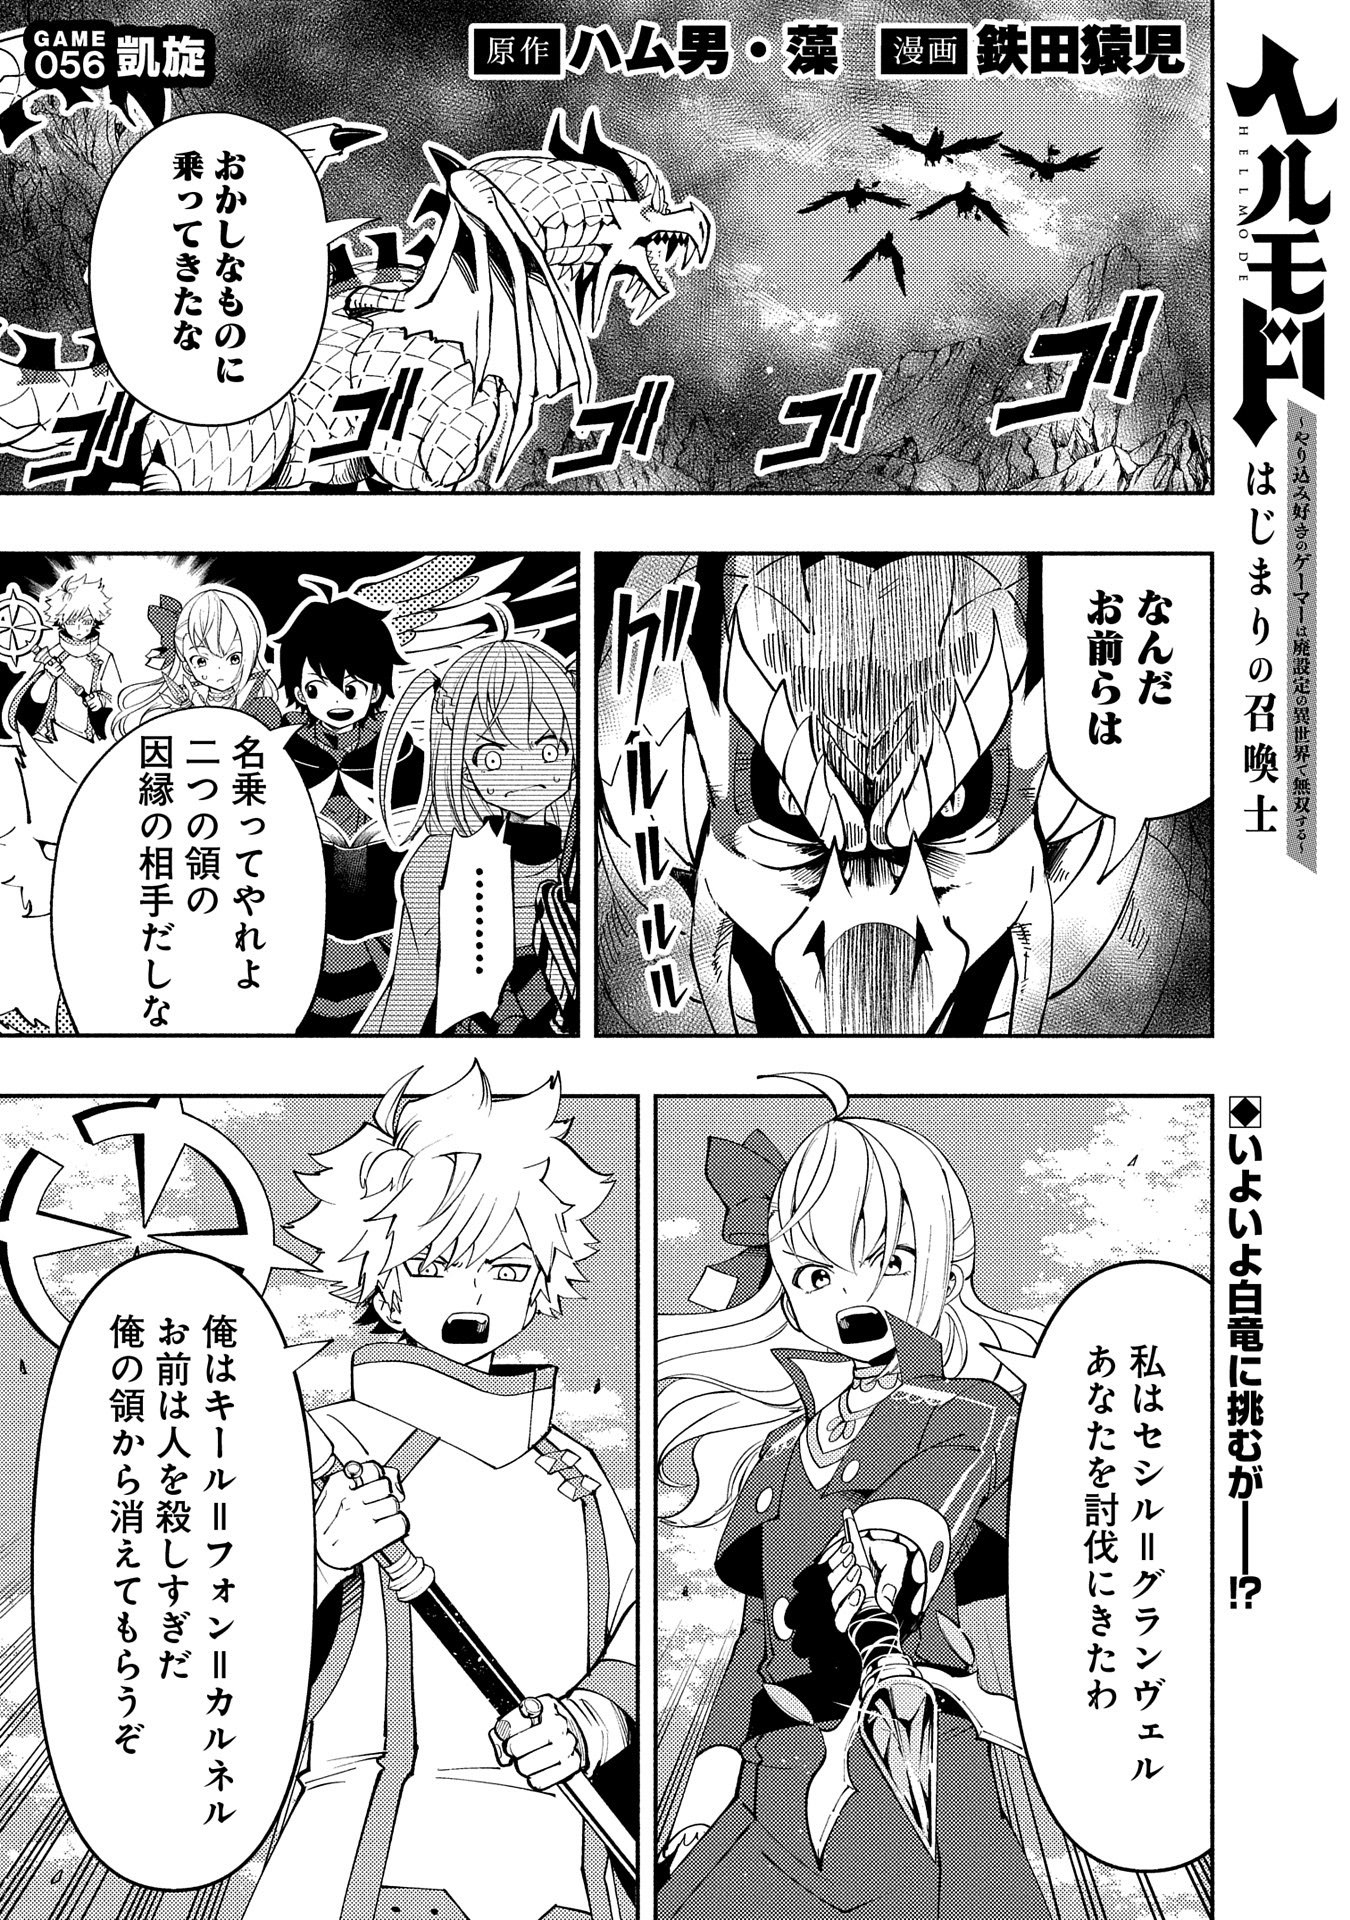 Hell Mode: Yarikomi Suki no Gamer wa Hai Settei no Isekai de Musou Suru - Chapter 56 - Page 1